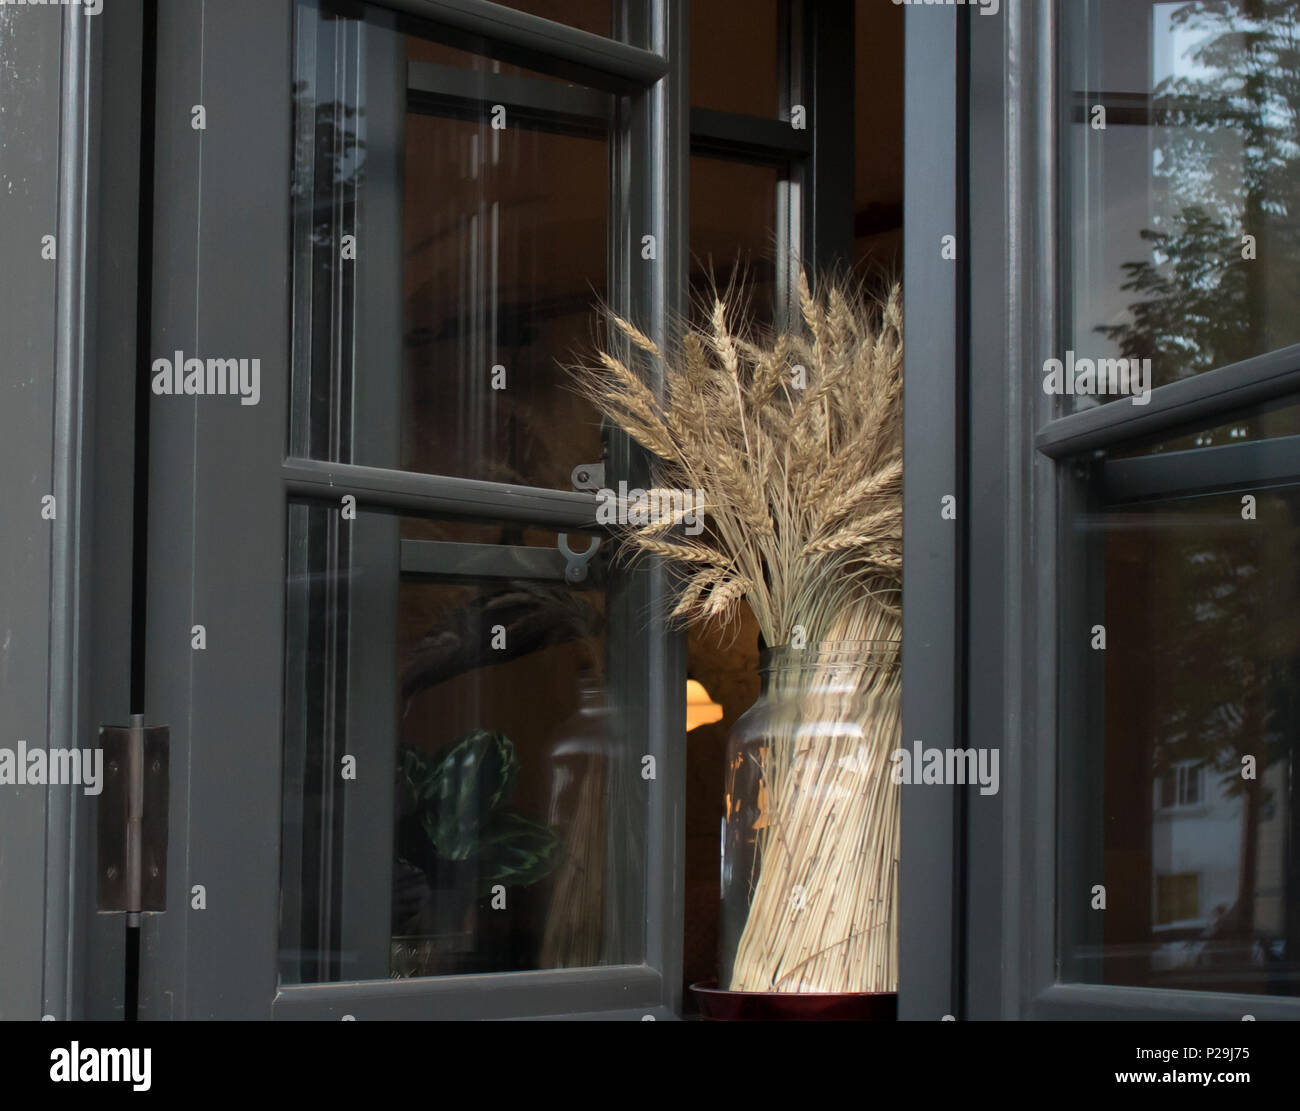 Les épis de blé fraîche dans un vase sur une fenêtre ouverte, décoration concept Banque D'Images